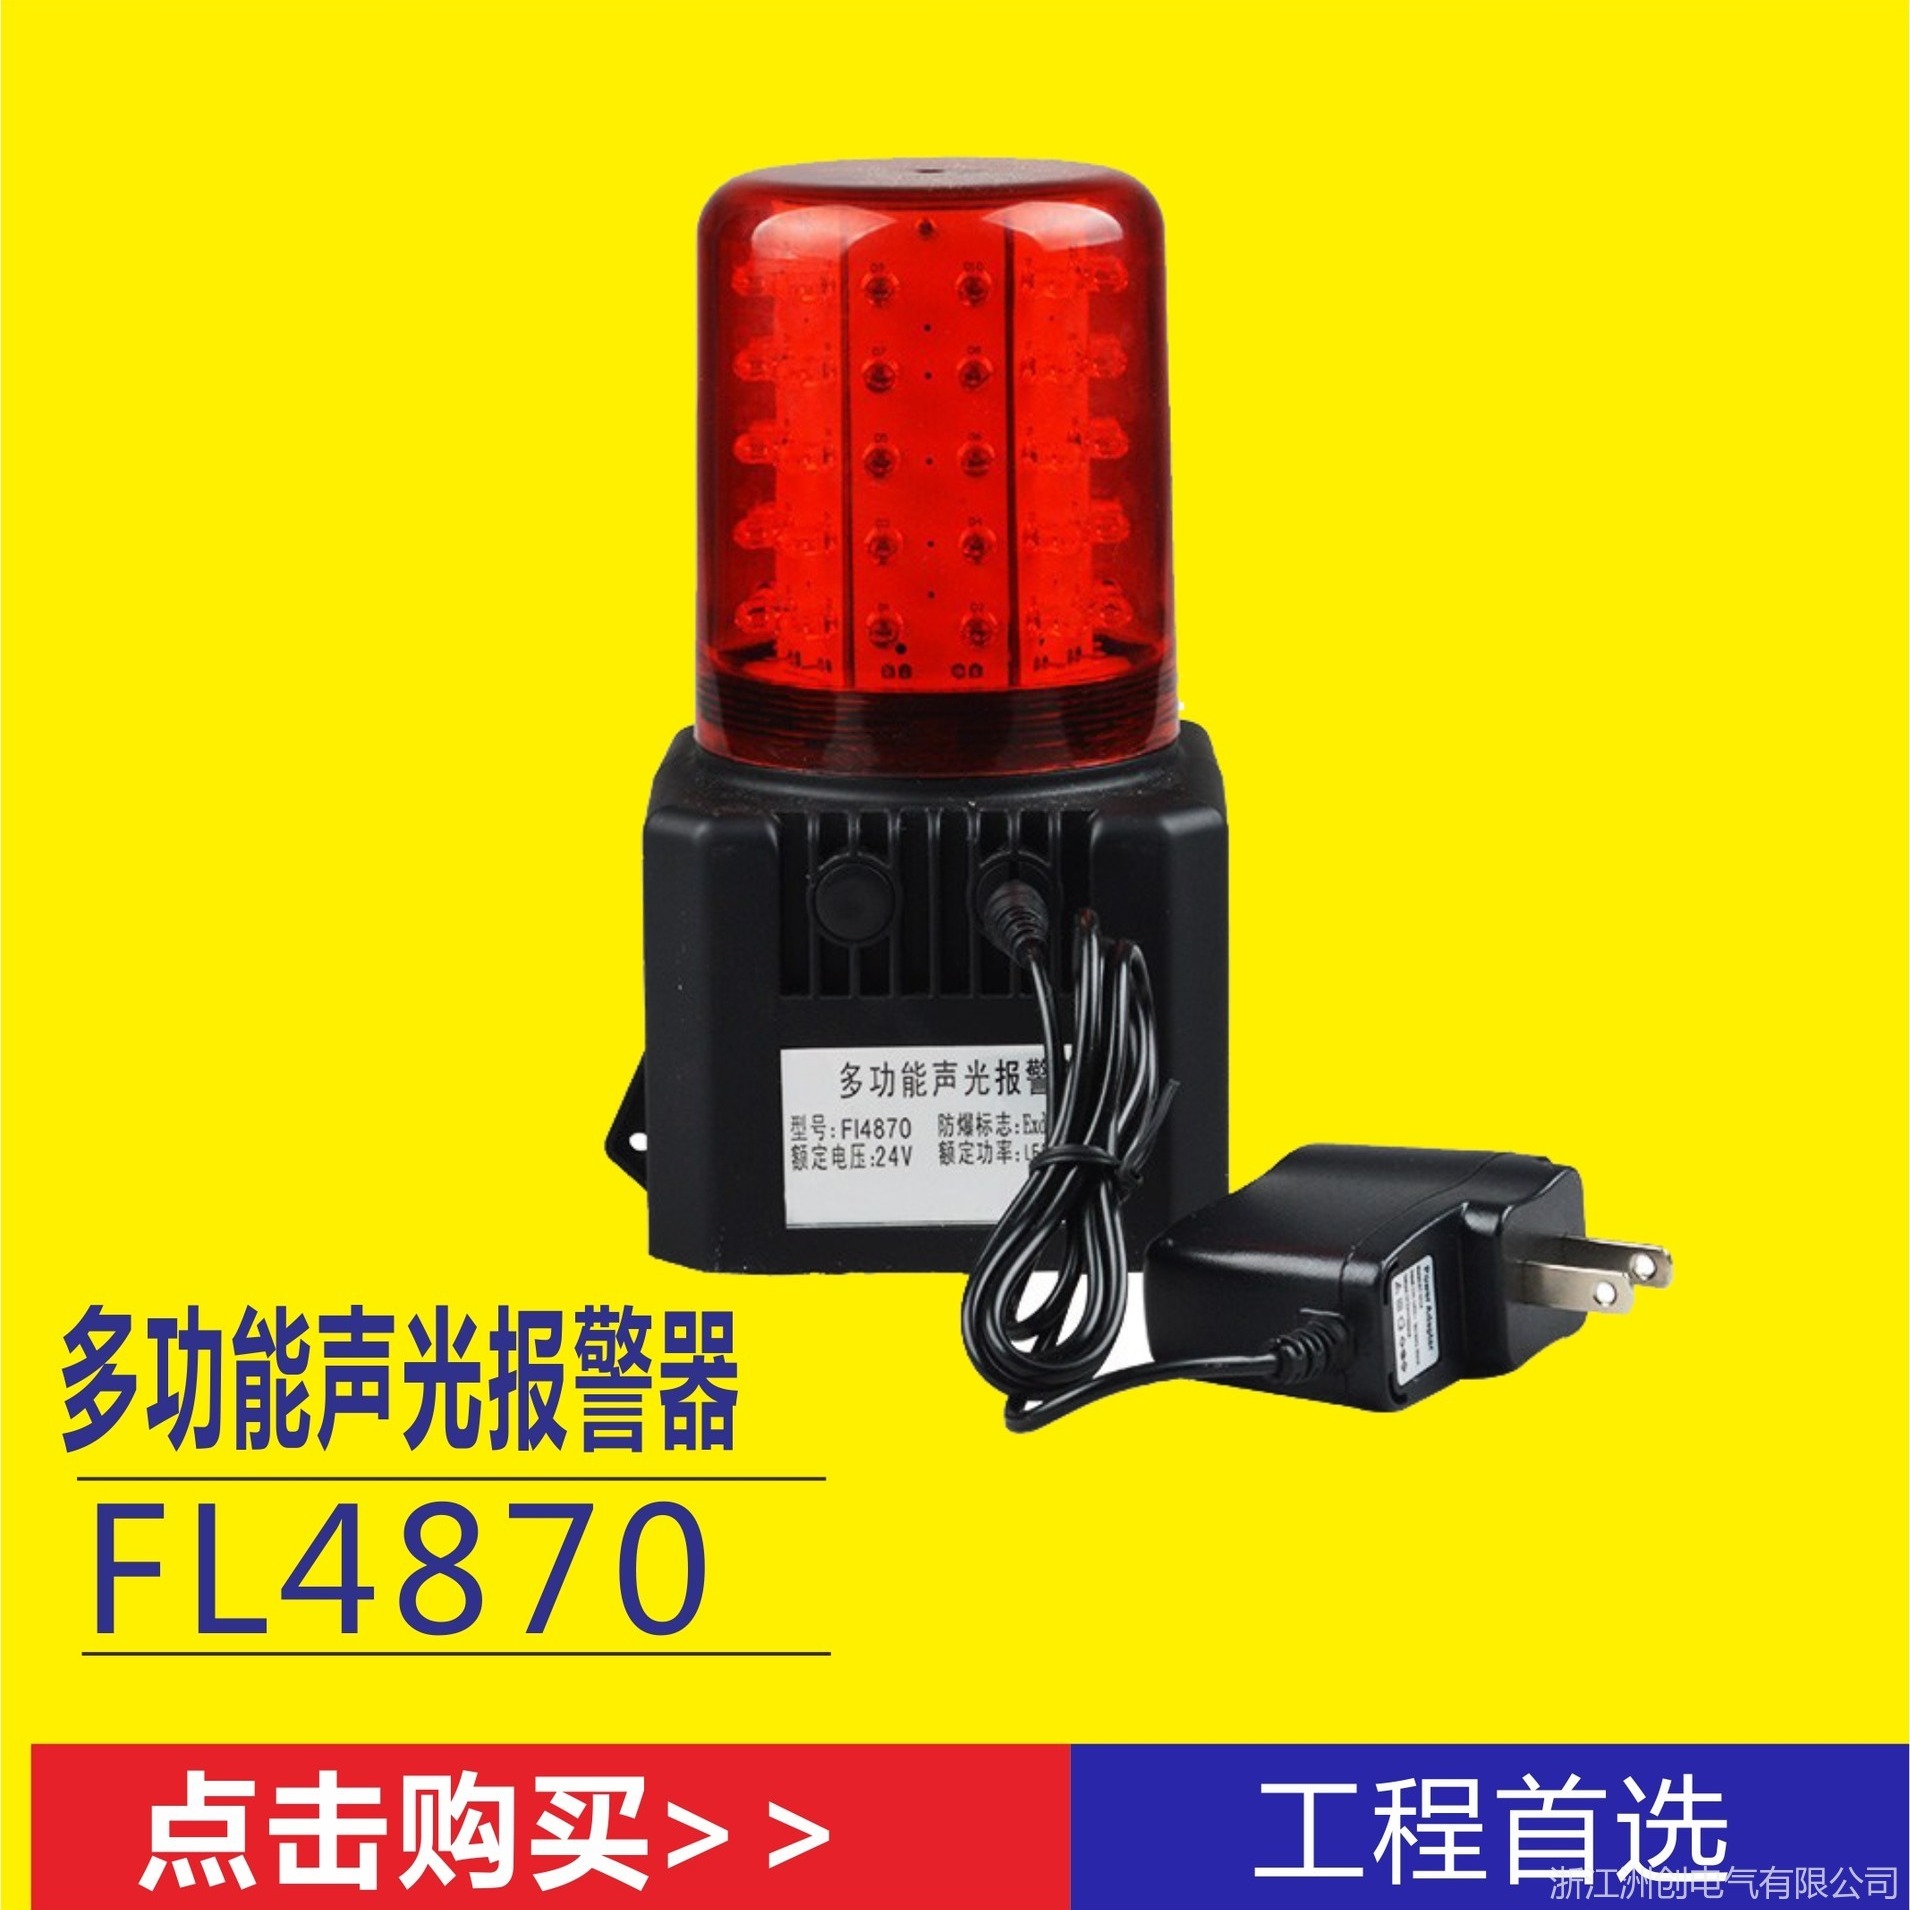 GMD4700声光报警灯 GMD4700蜂鸣式红闪报警器 充电式声光报警器图片